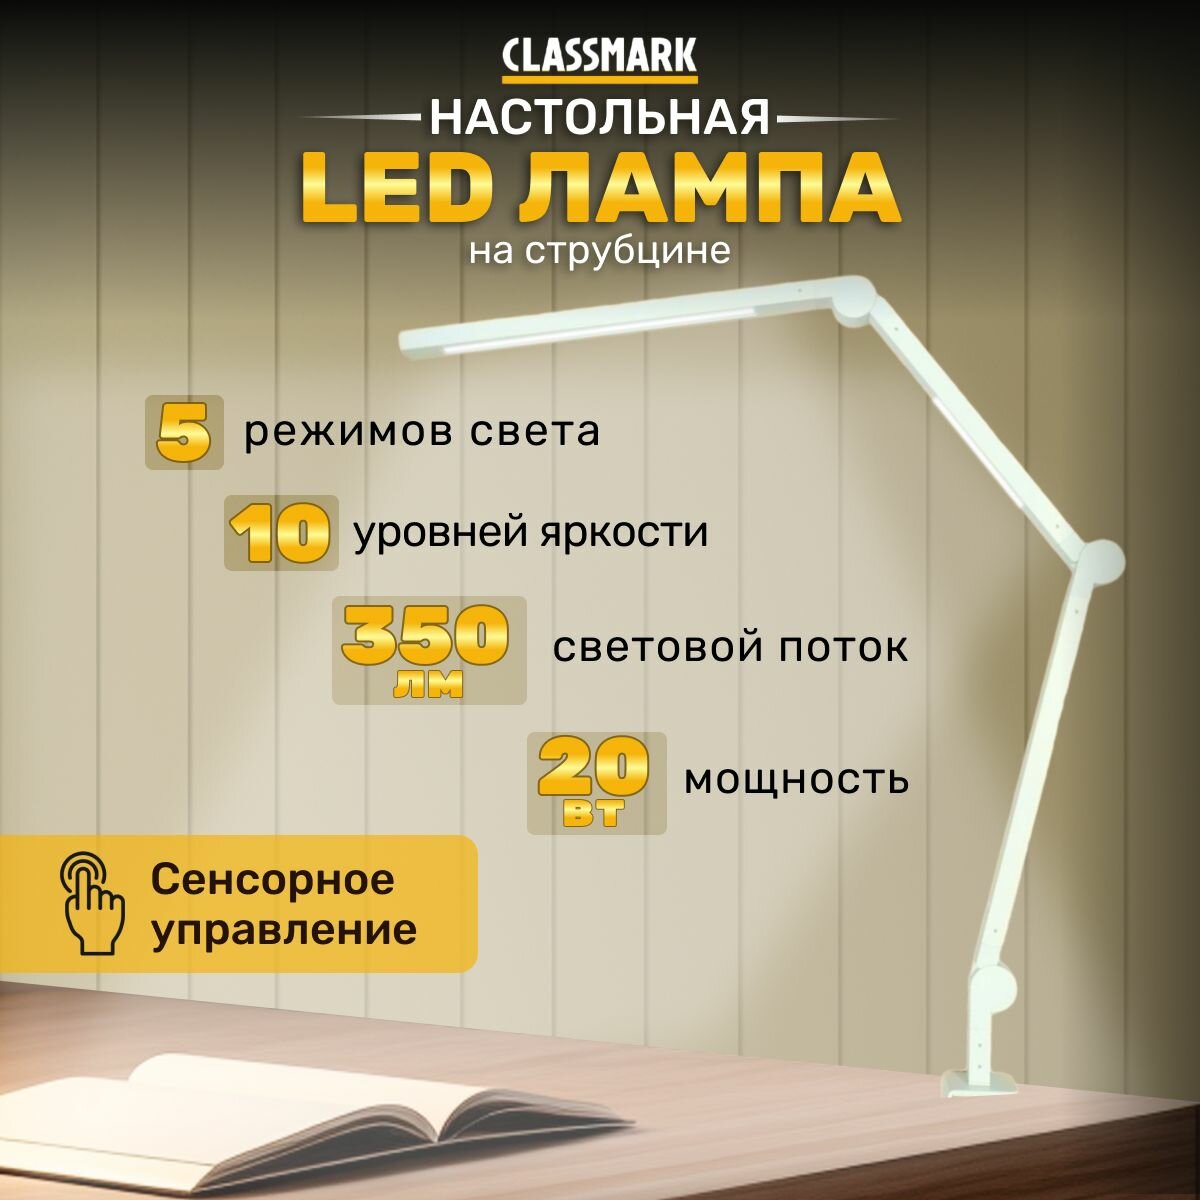 LED лампа настольная светодиодная на струбцине Classmark светильник для школьника, 5 цветовых температур от 3000-6000К, с регулировкой яркости 10 режимов, защита глаз, регулируемая, белая